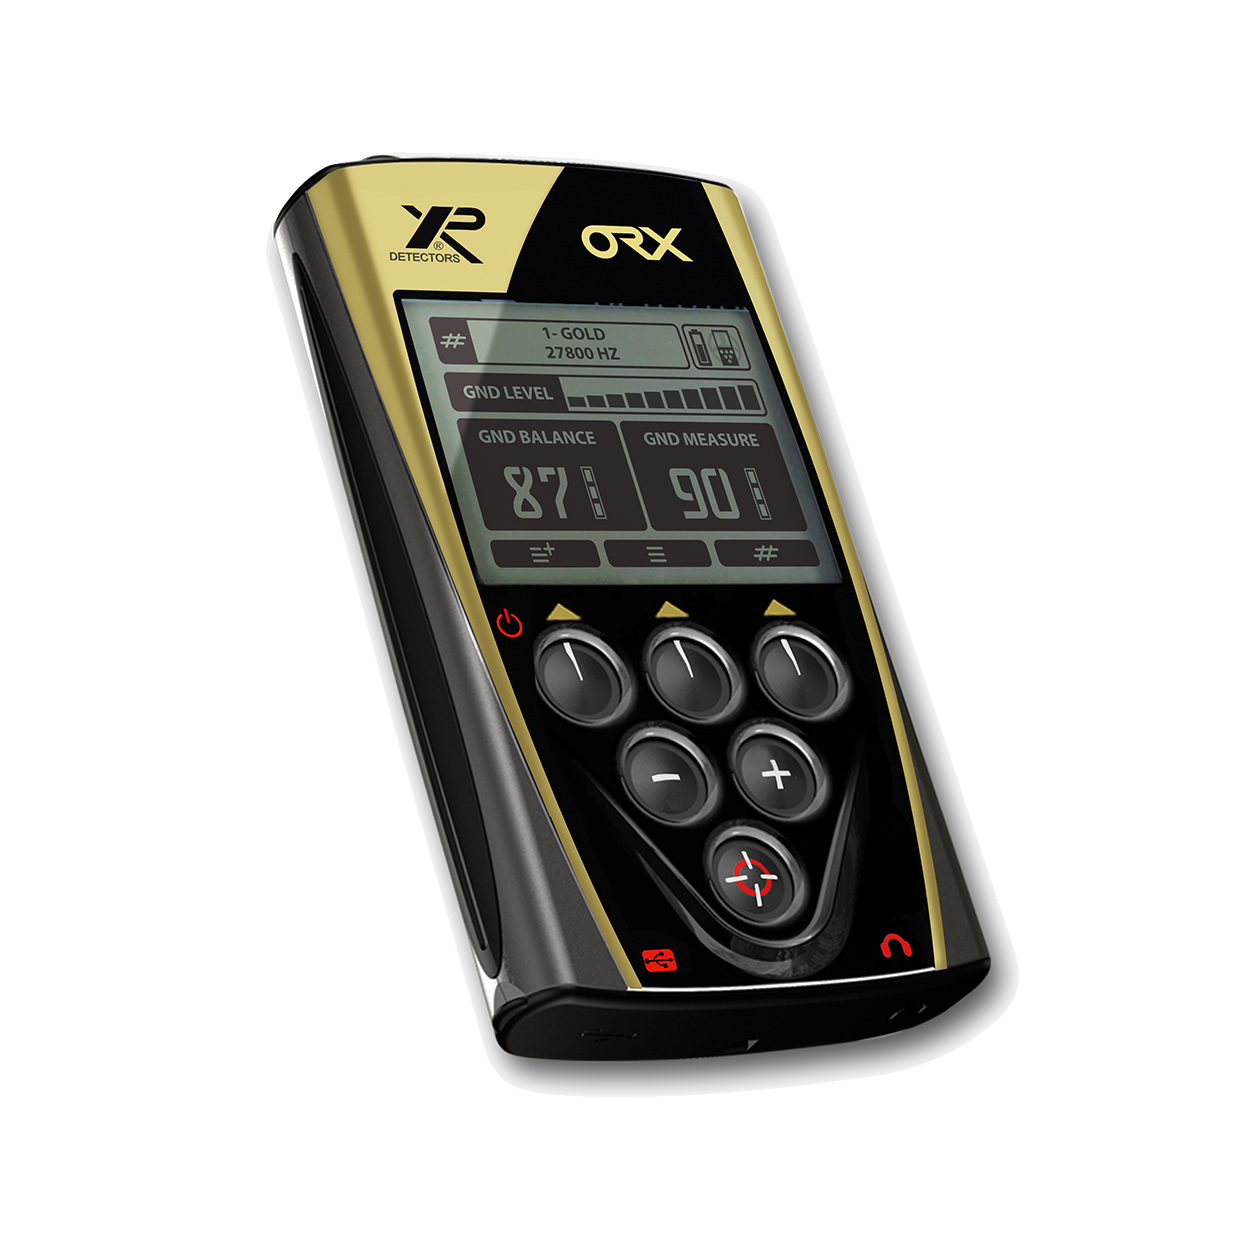 XP ORX X35 22 RC Metalldetektor WSA